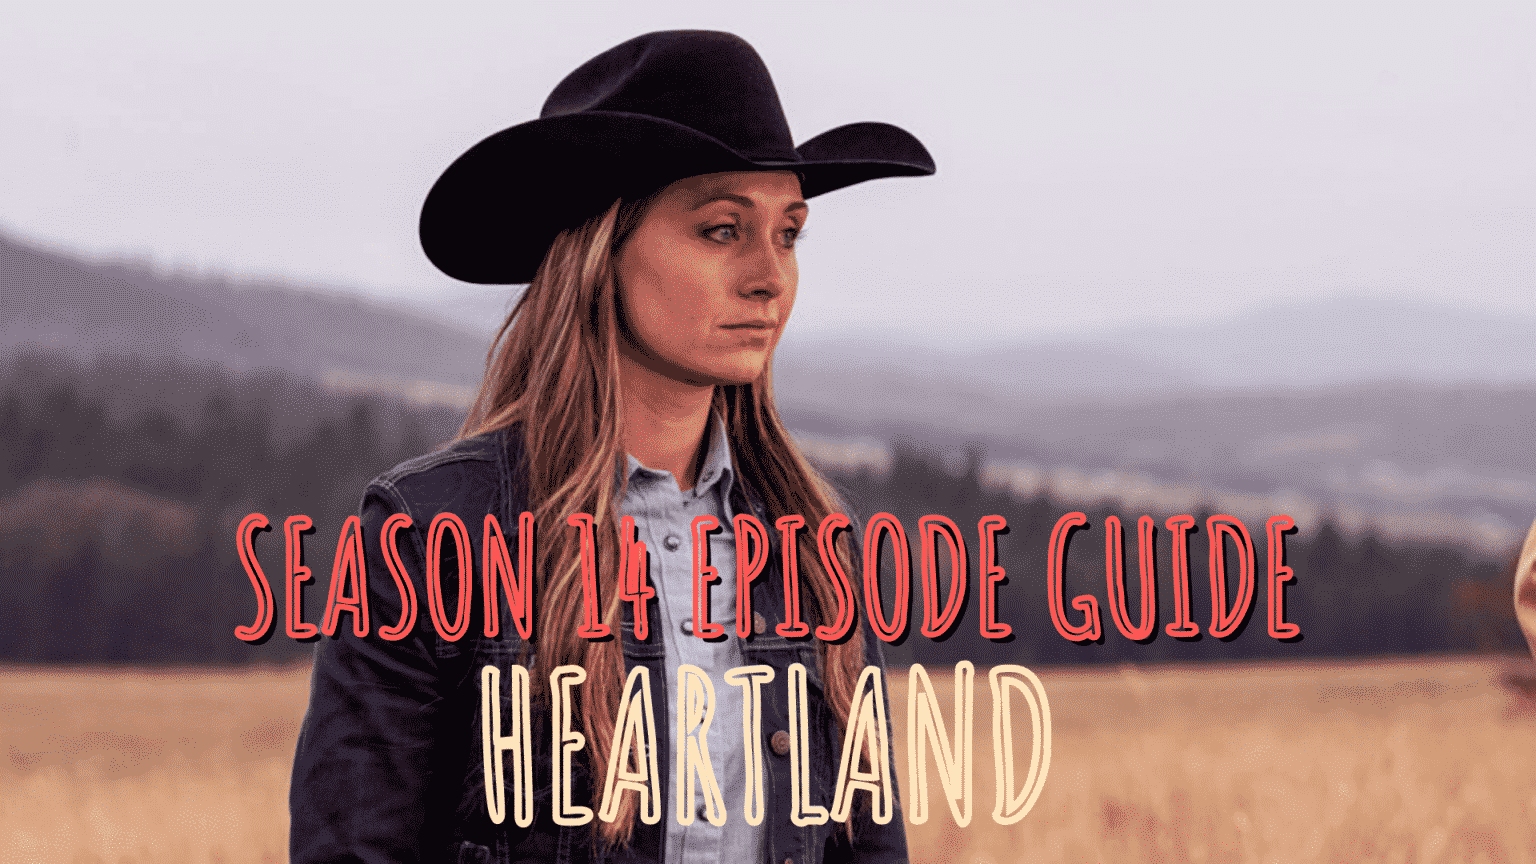 heartland season 14 episode 1 full episode